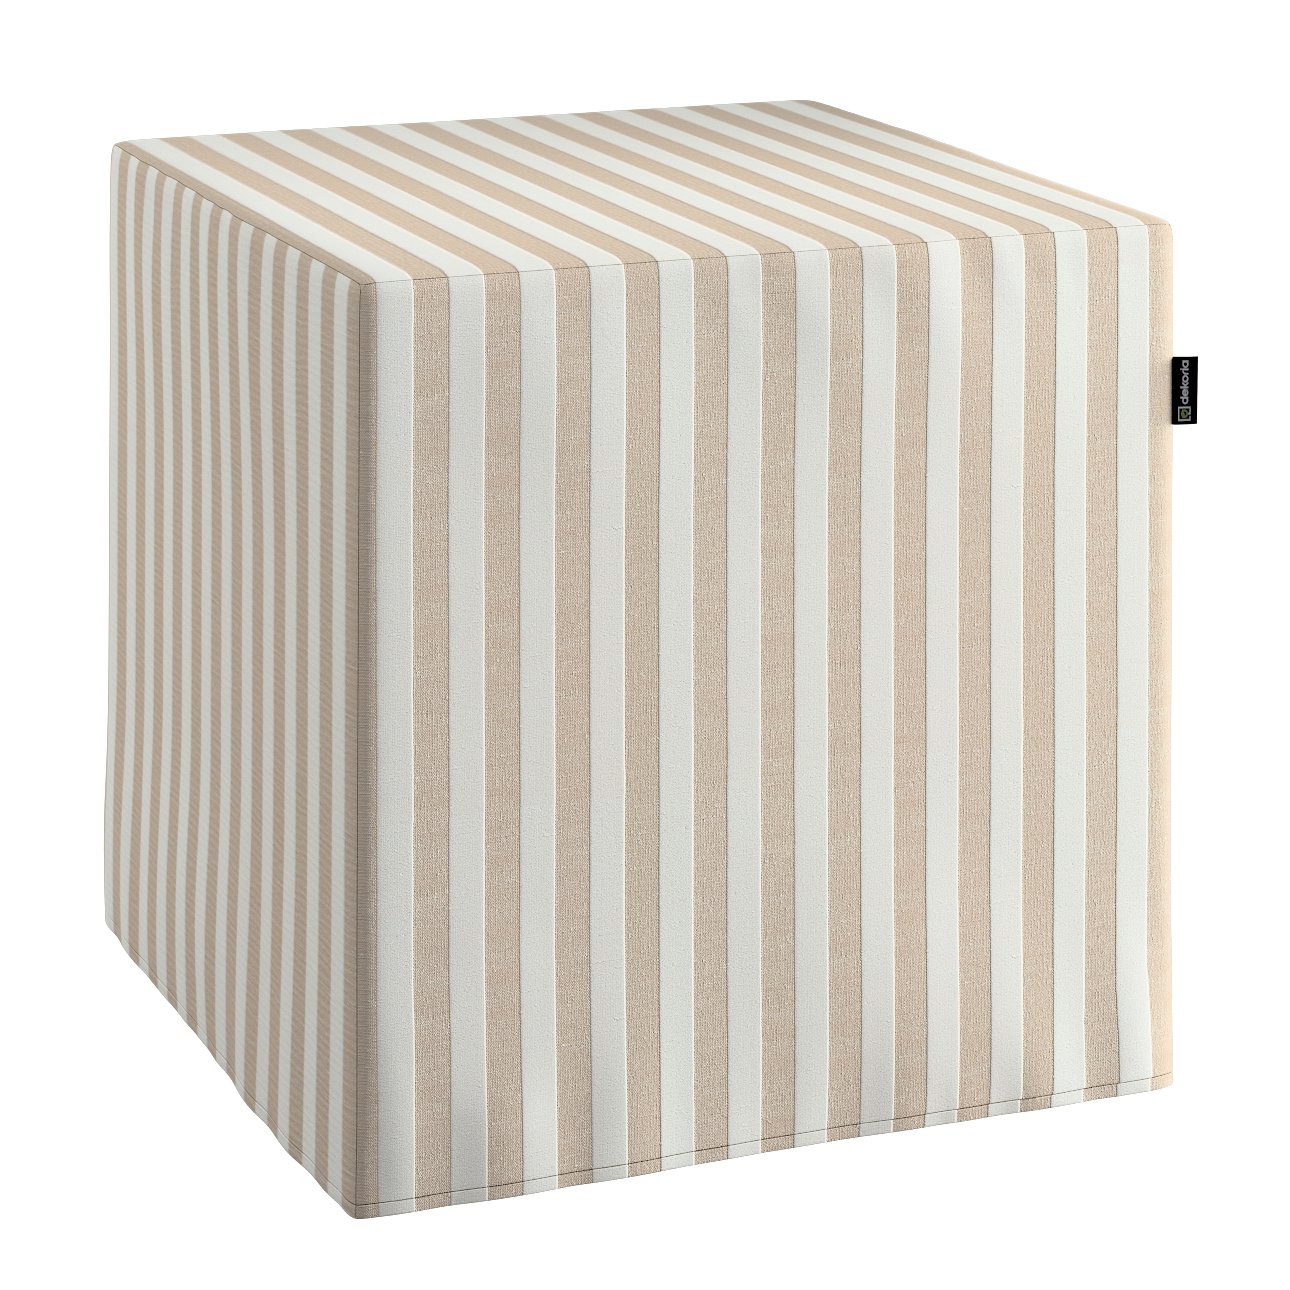 Dekoria Sedák Cube - kostka pevná 40x40x40, béžová - bílá pruhy, 40 x 40 x 40 cm, Quadro, 136-07